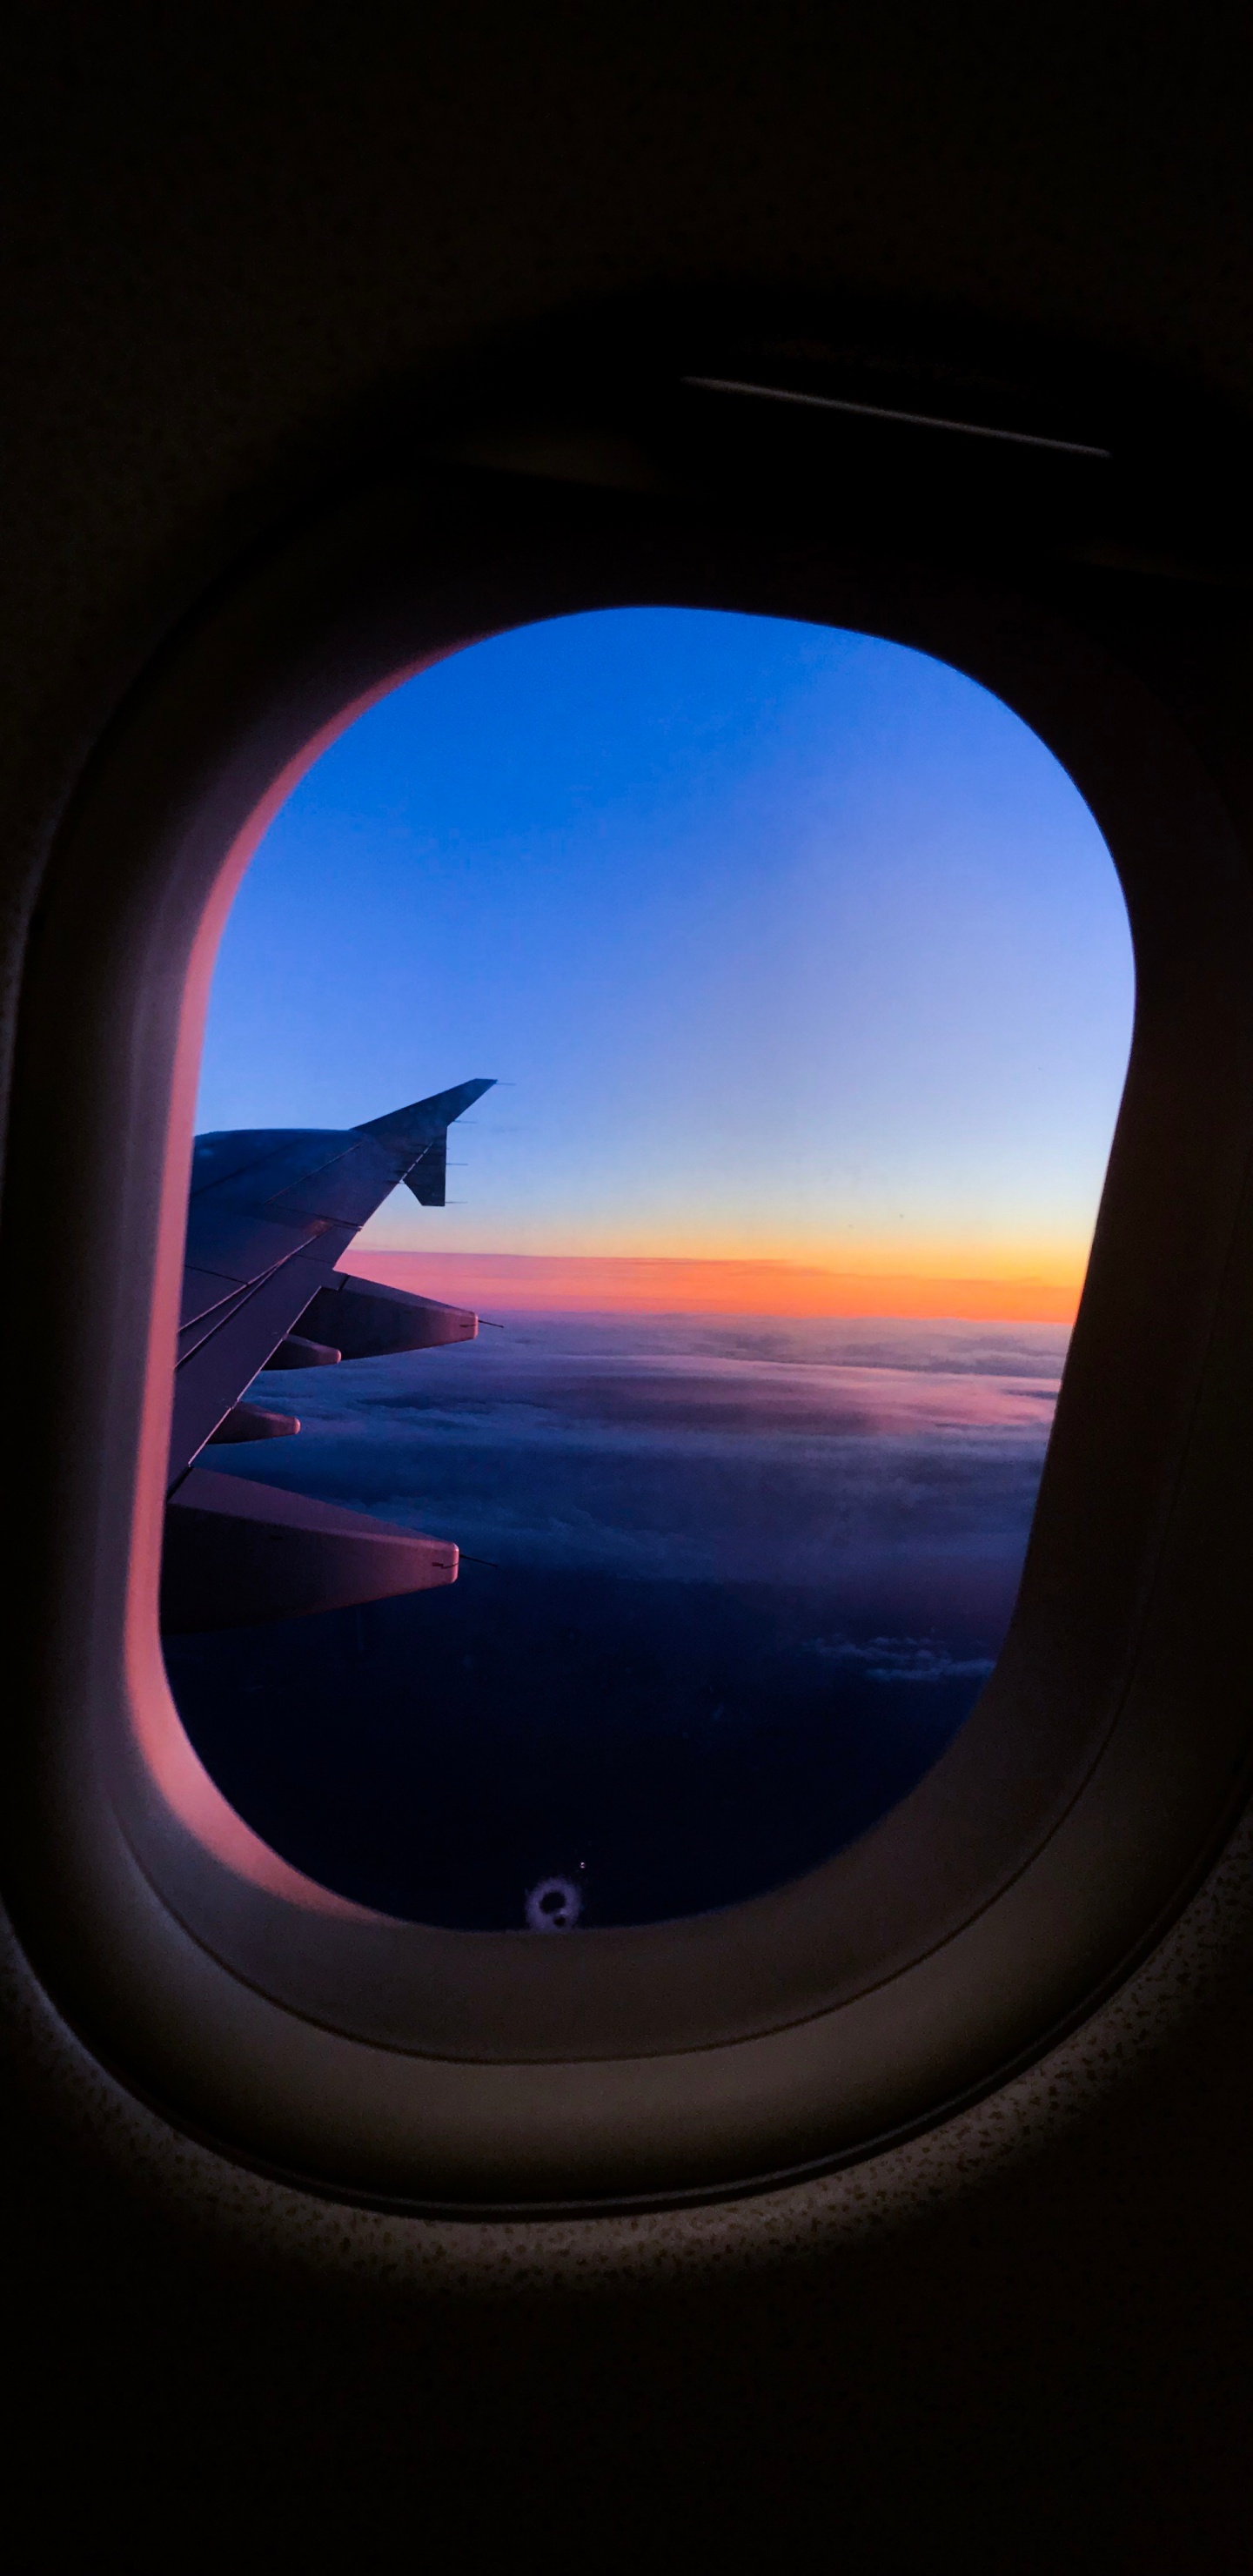 Flugzeugfenster Mit Blick Auf Weiße Wolken Tagsüber. Wallpaper in 1440x2960 Resolution